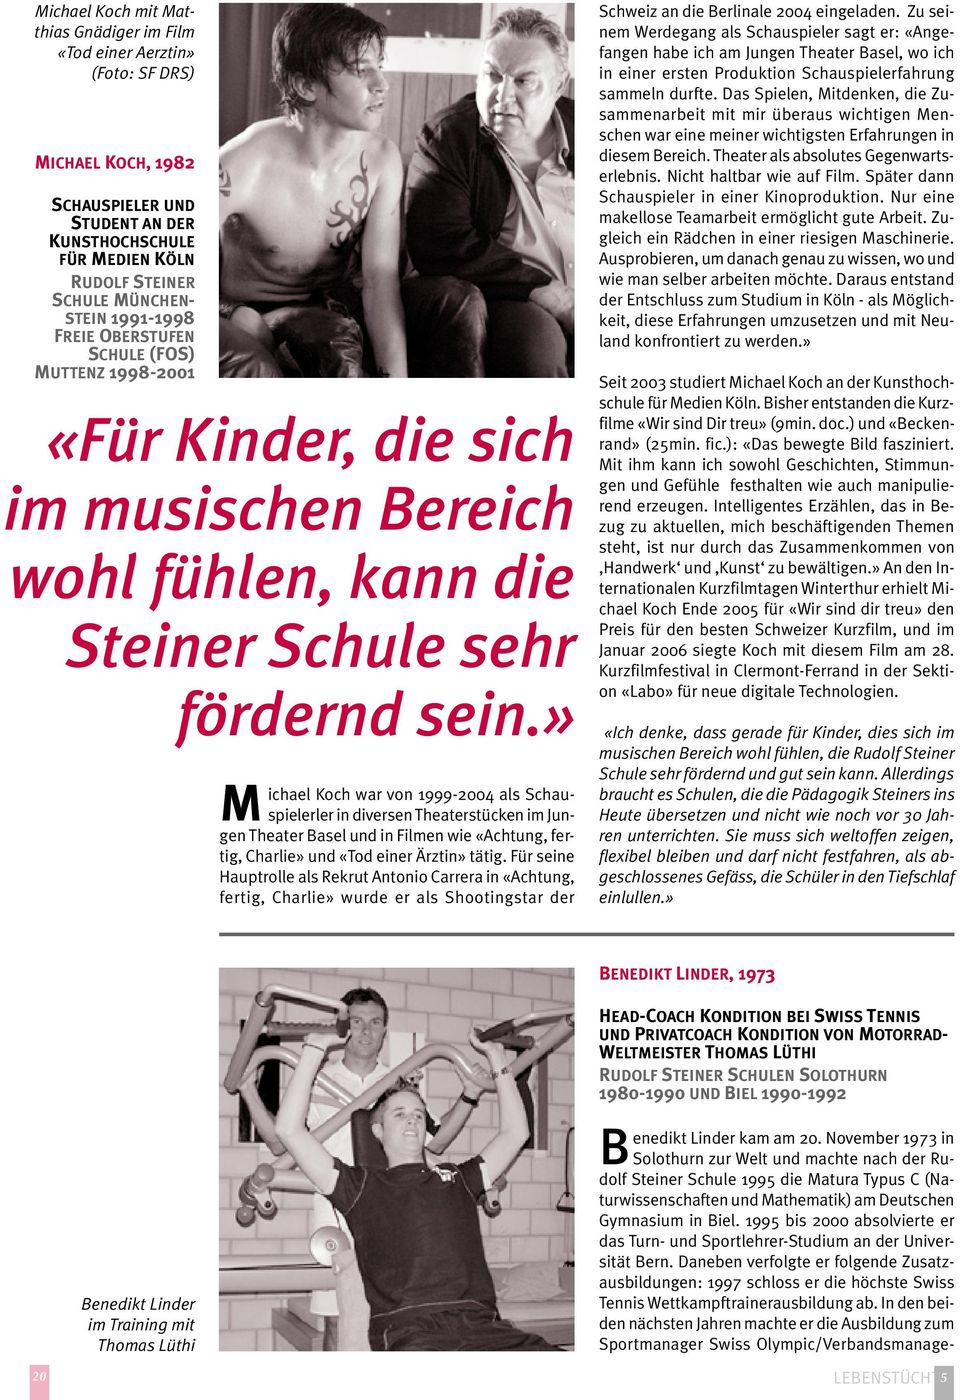 » ichael Koch war von 1999-2004 als Schau- M spielerler in diversen Theaterstücken im Jungen Theater Basel und in Filmen wie «Achtung, fertig, Charlie» und «Tod einer Ärztin» tätig.